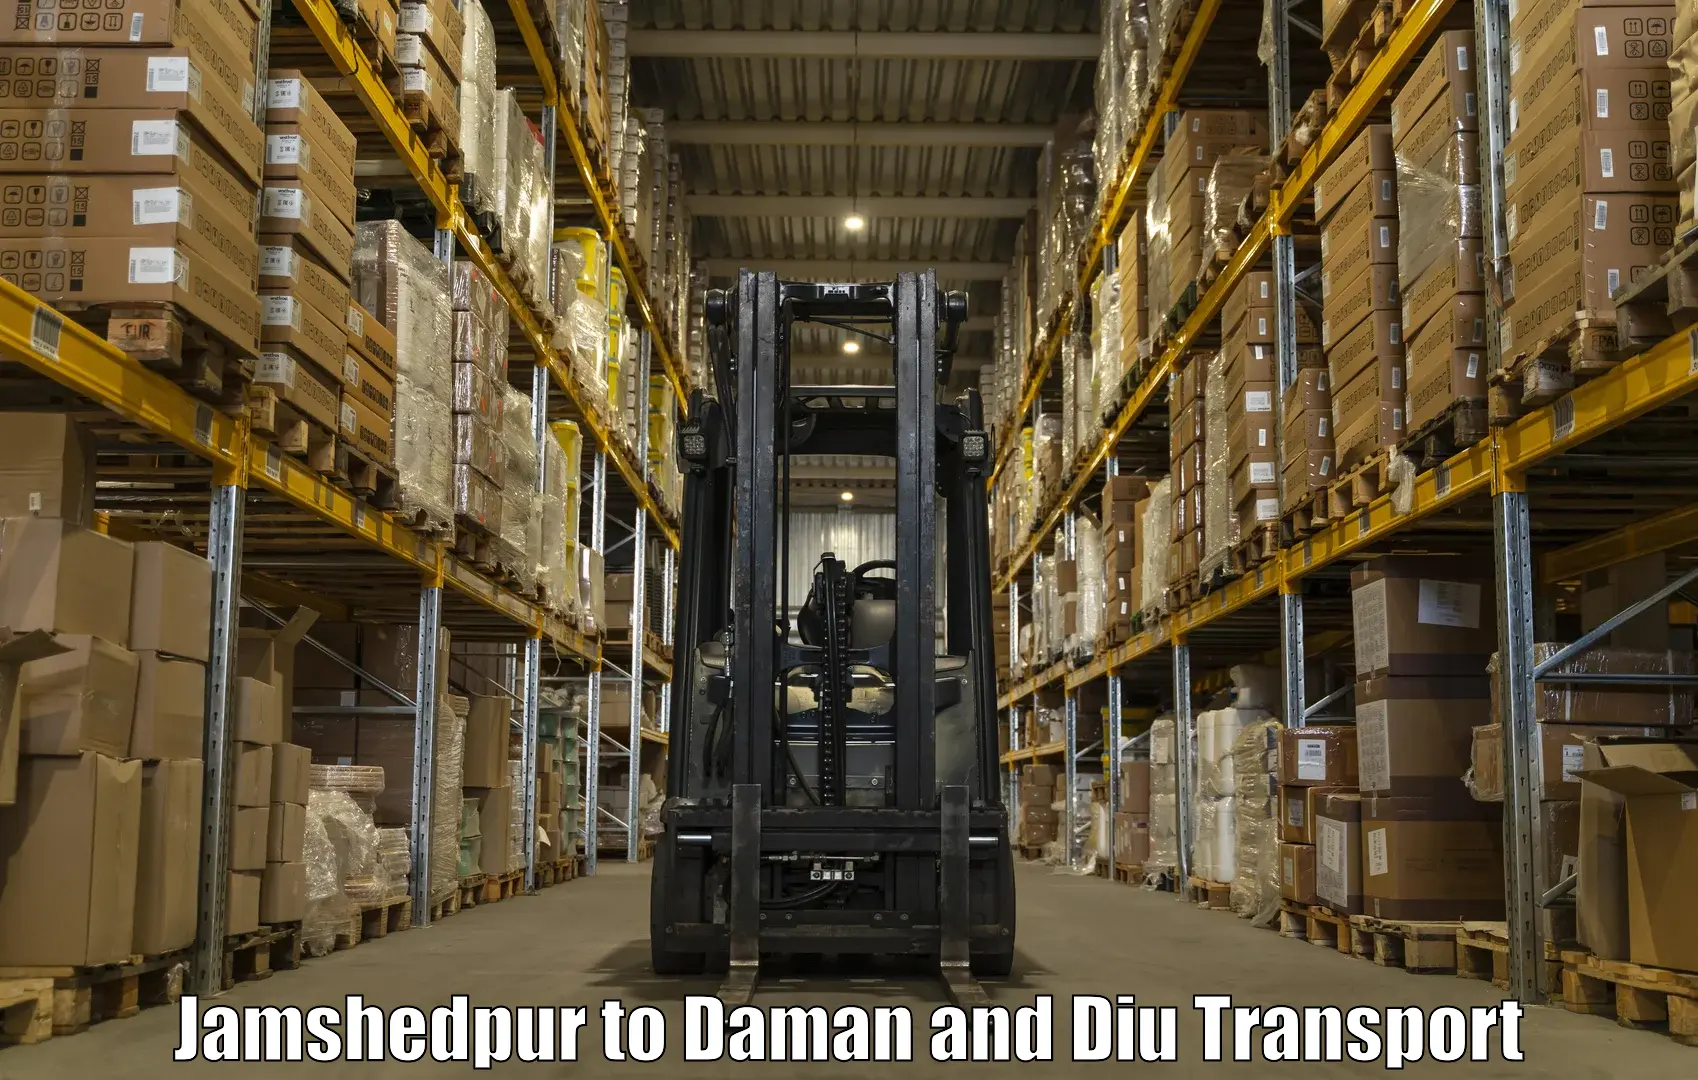 Lorry transport service Jamshedpur to Daman